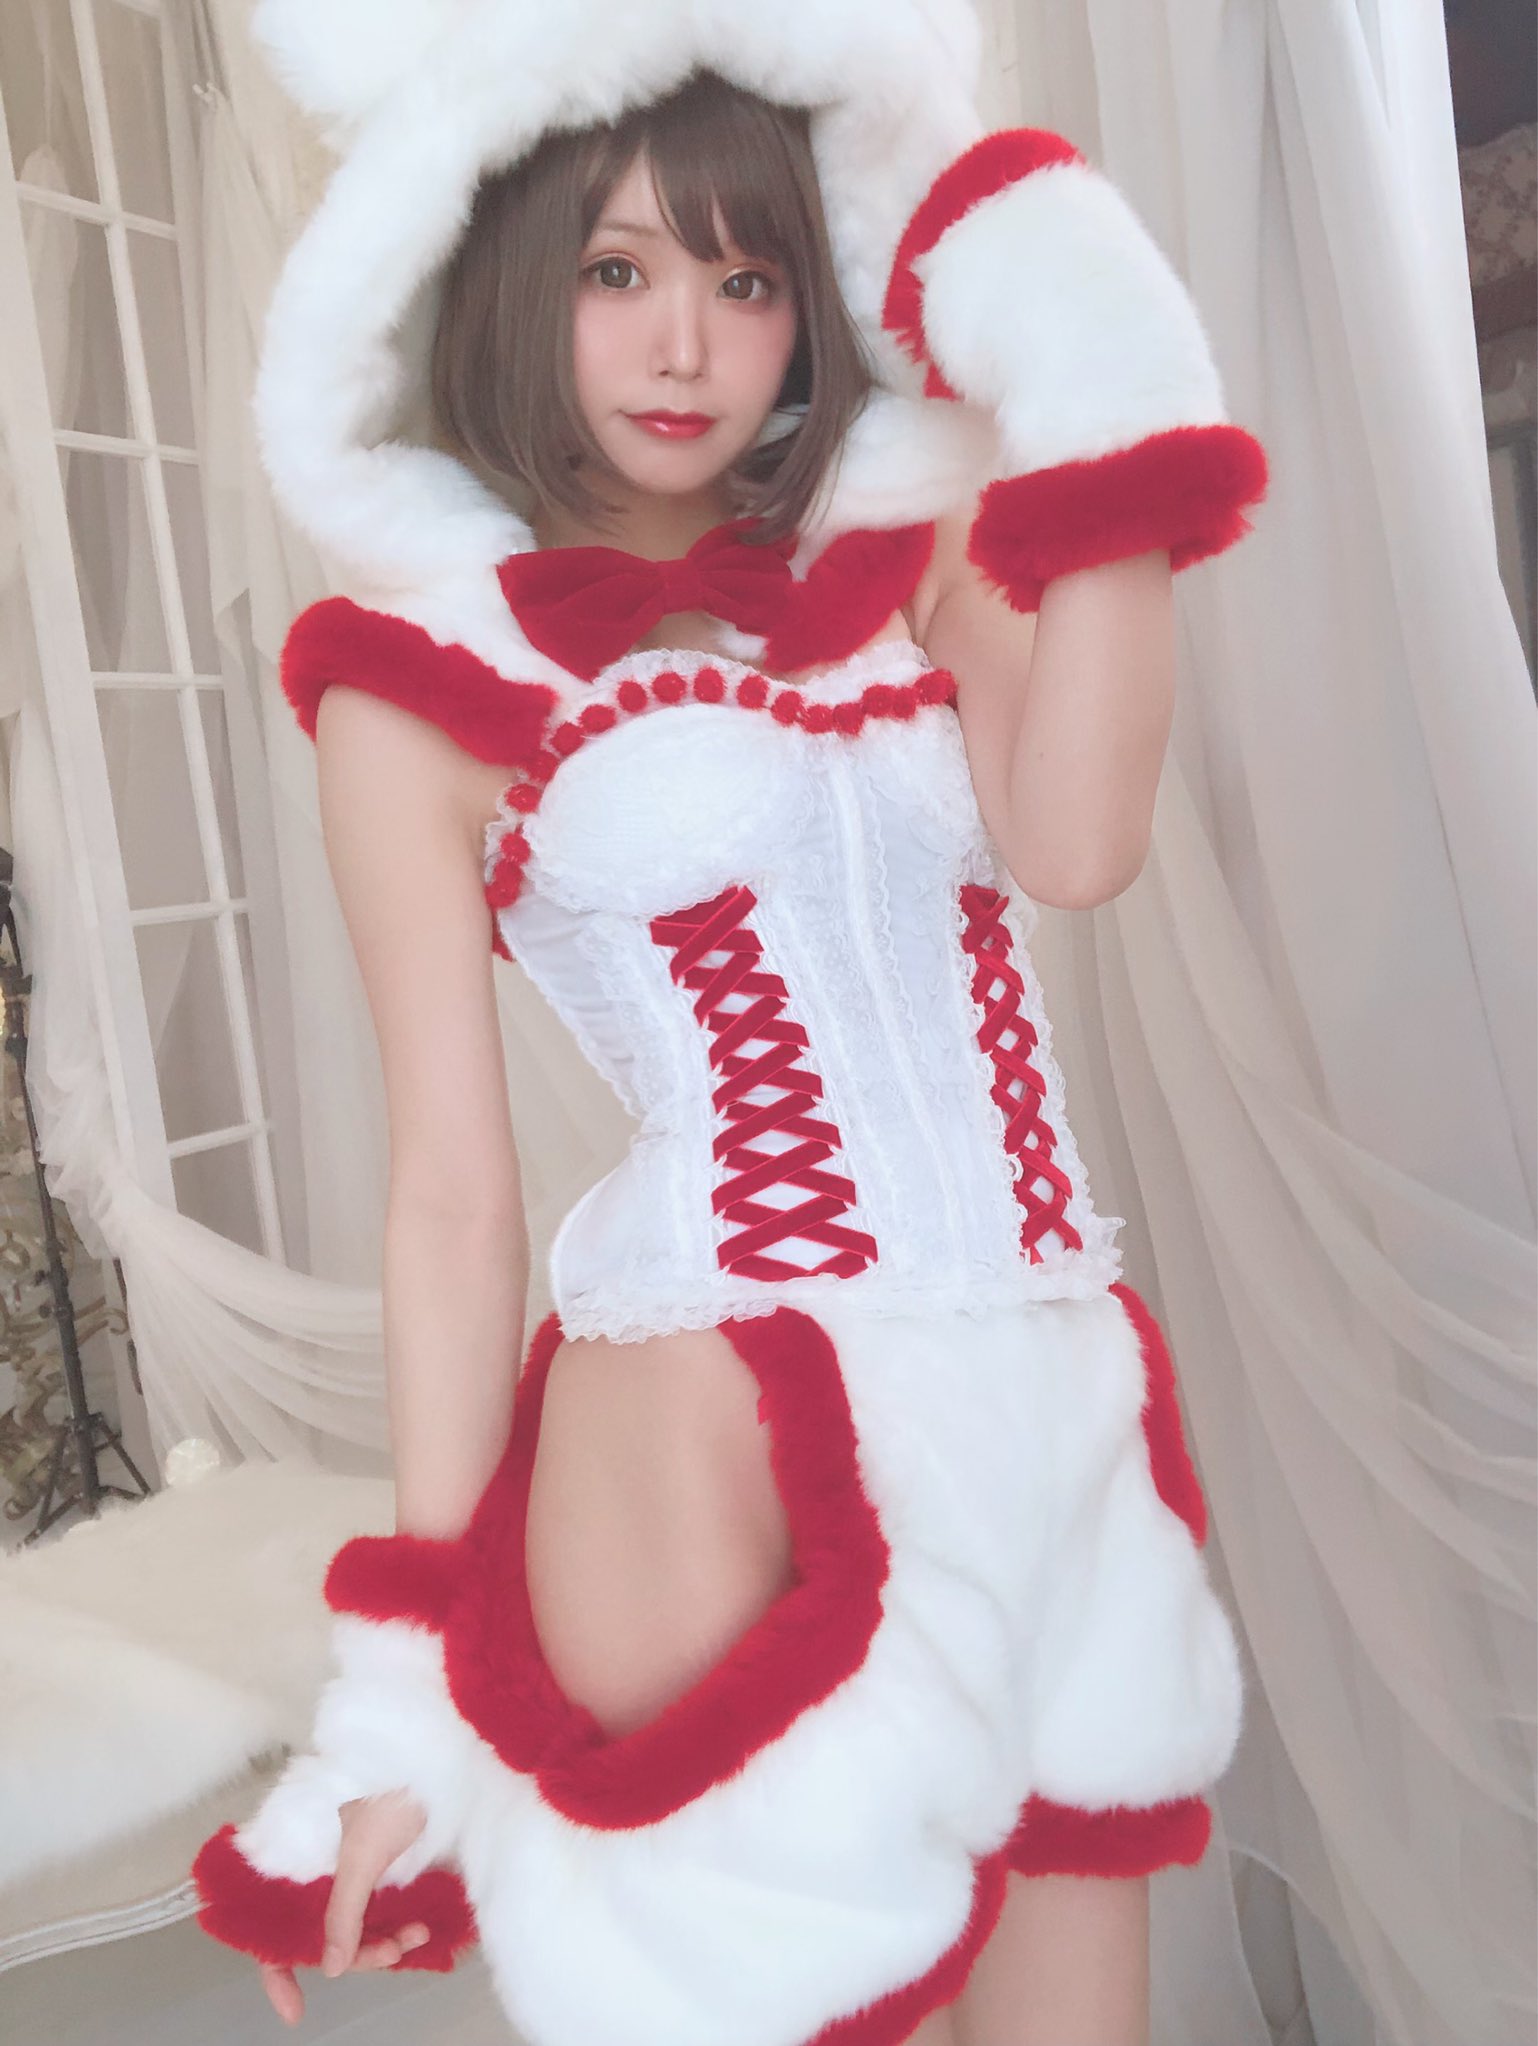 画像,冬コミ新作写真集撮影してきました！ケモ耳シリーズの1着目はクマ×クリスマスっぽく赤白で、デザインは自分で考えた衣装なのです🐻🎄パンツの横がポイント…( ◜௰◝ …